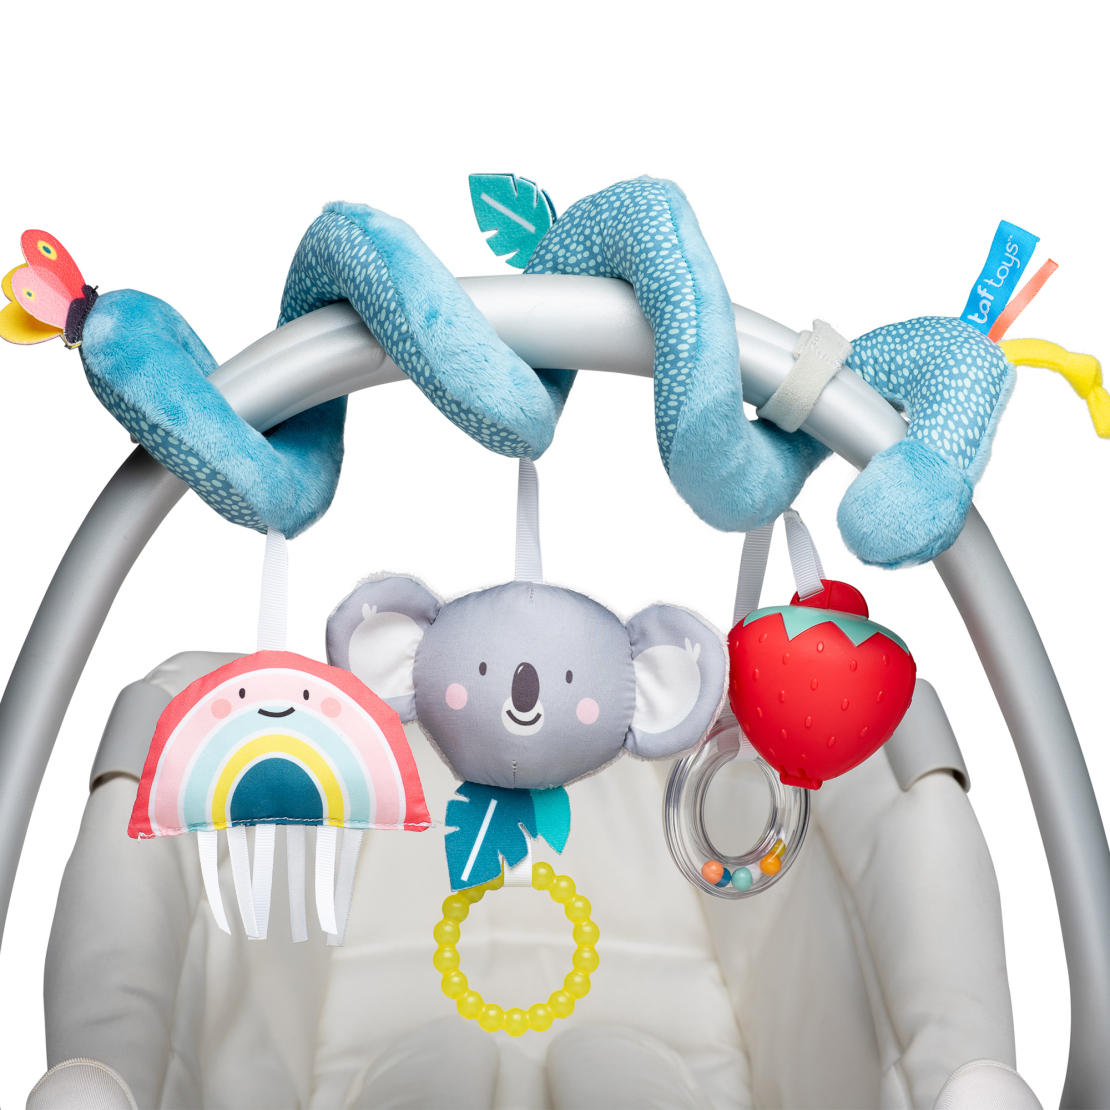 7# - אושר ענוג לבת : מתנה ליולדת - קופסת צעצועים, שמיכה רכה לתינוקת, ספירלת קואלה משגעת לסלקל/ עגלה עם קופסת תות